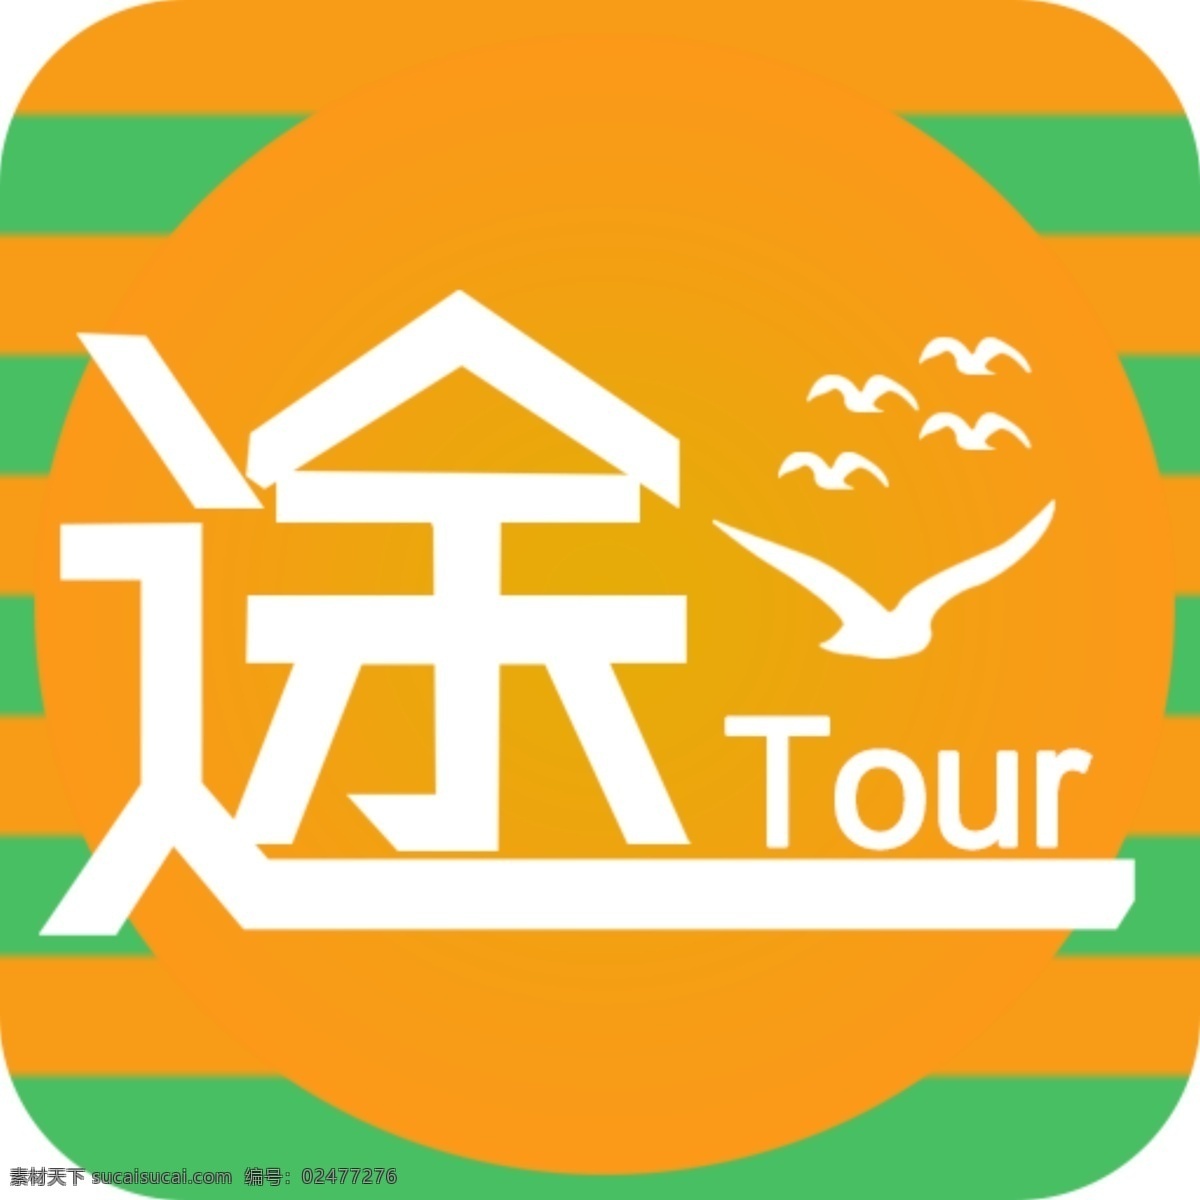 tour 旅游 启动图标 扁平 橙色